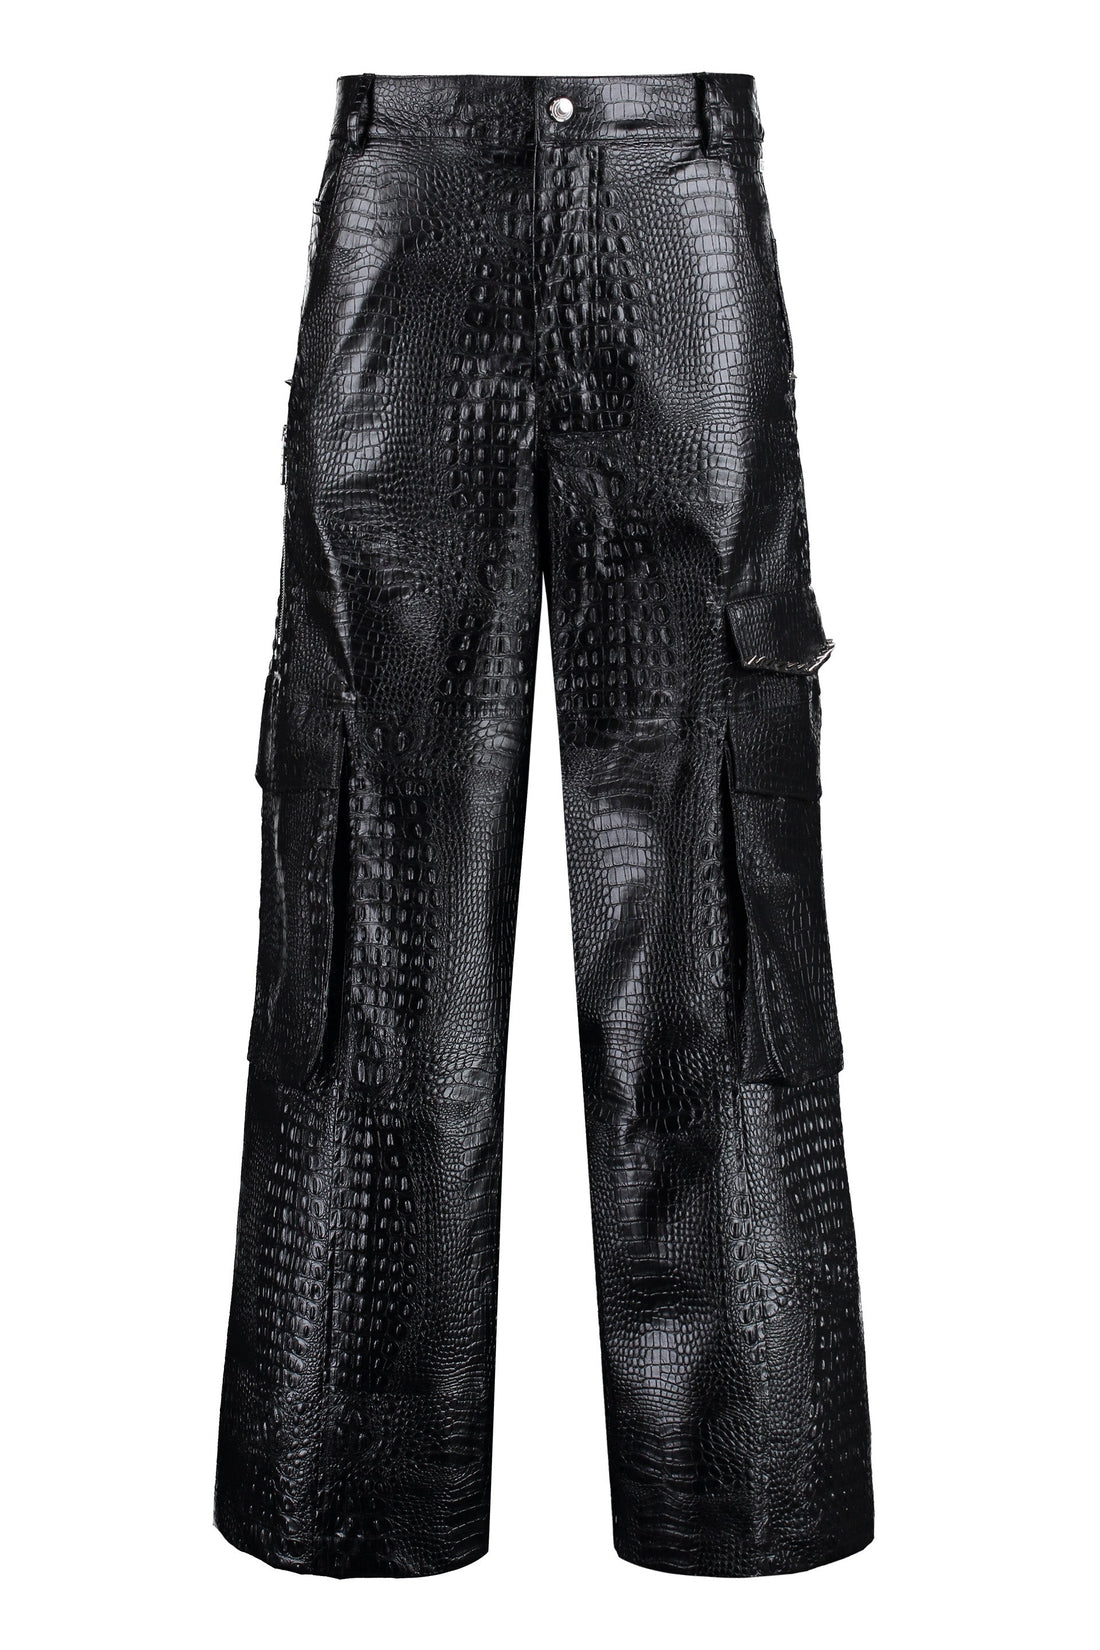 GCDS-OUTLET-SALE-Vegan leather trousers-ARCHIVIST